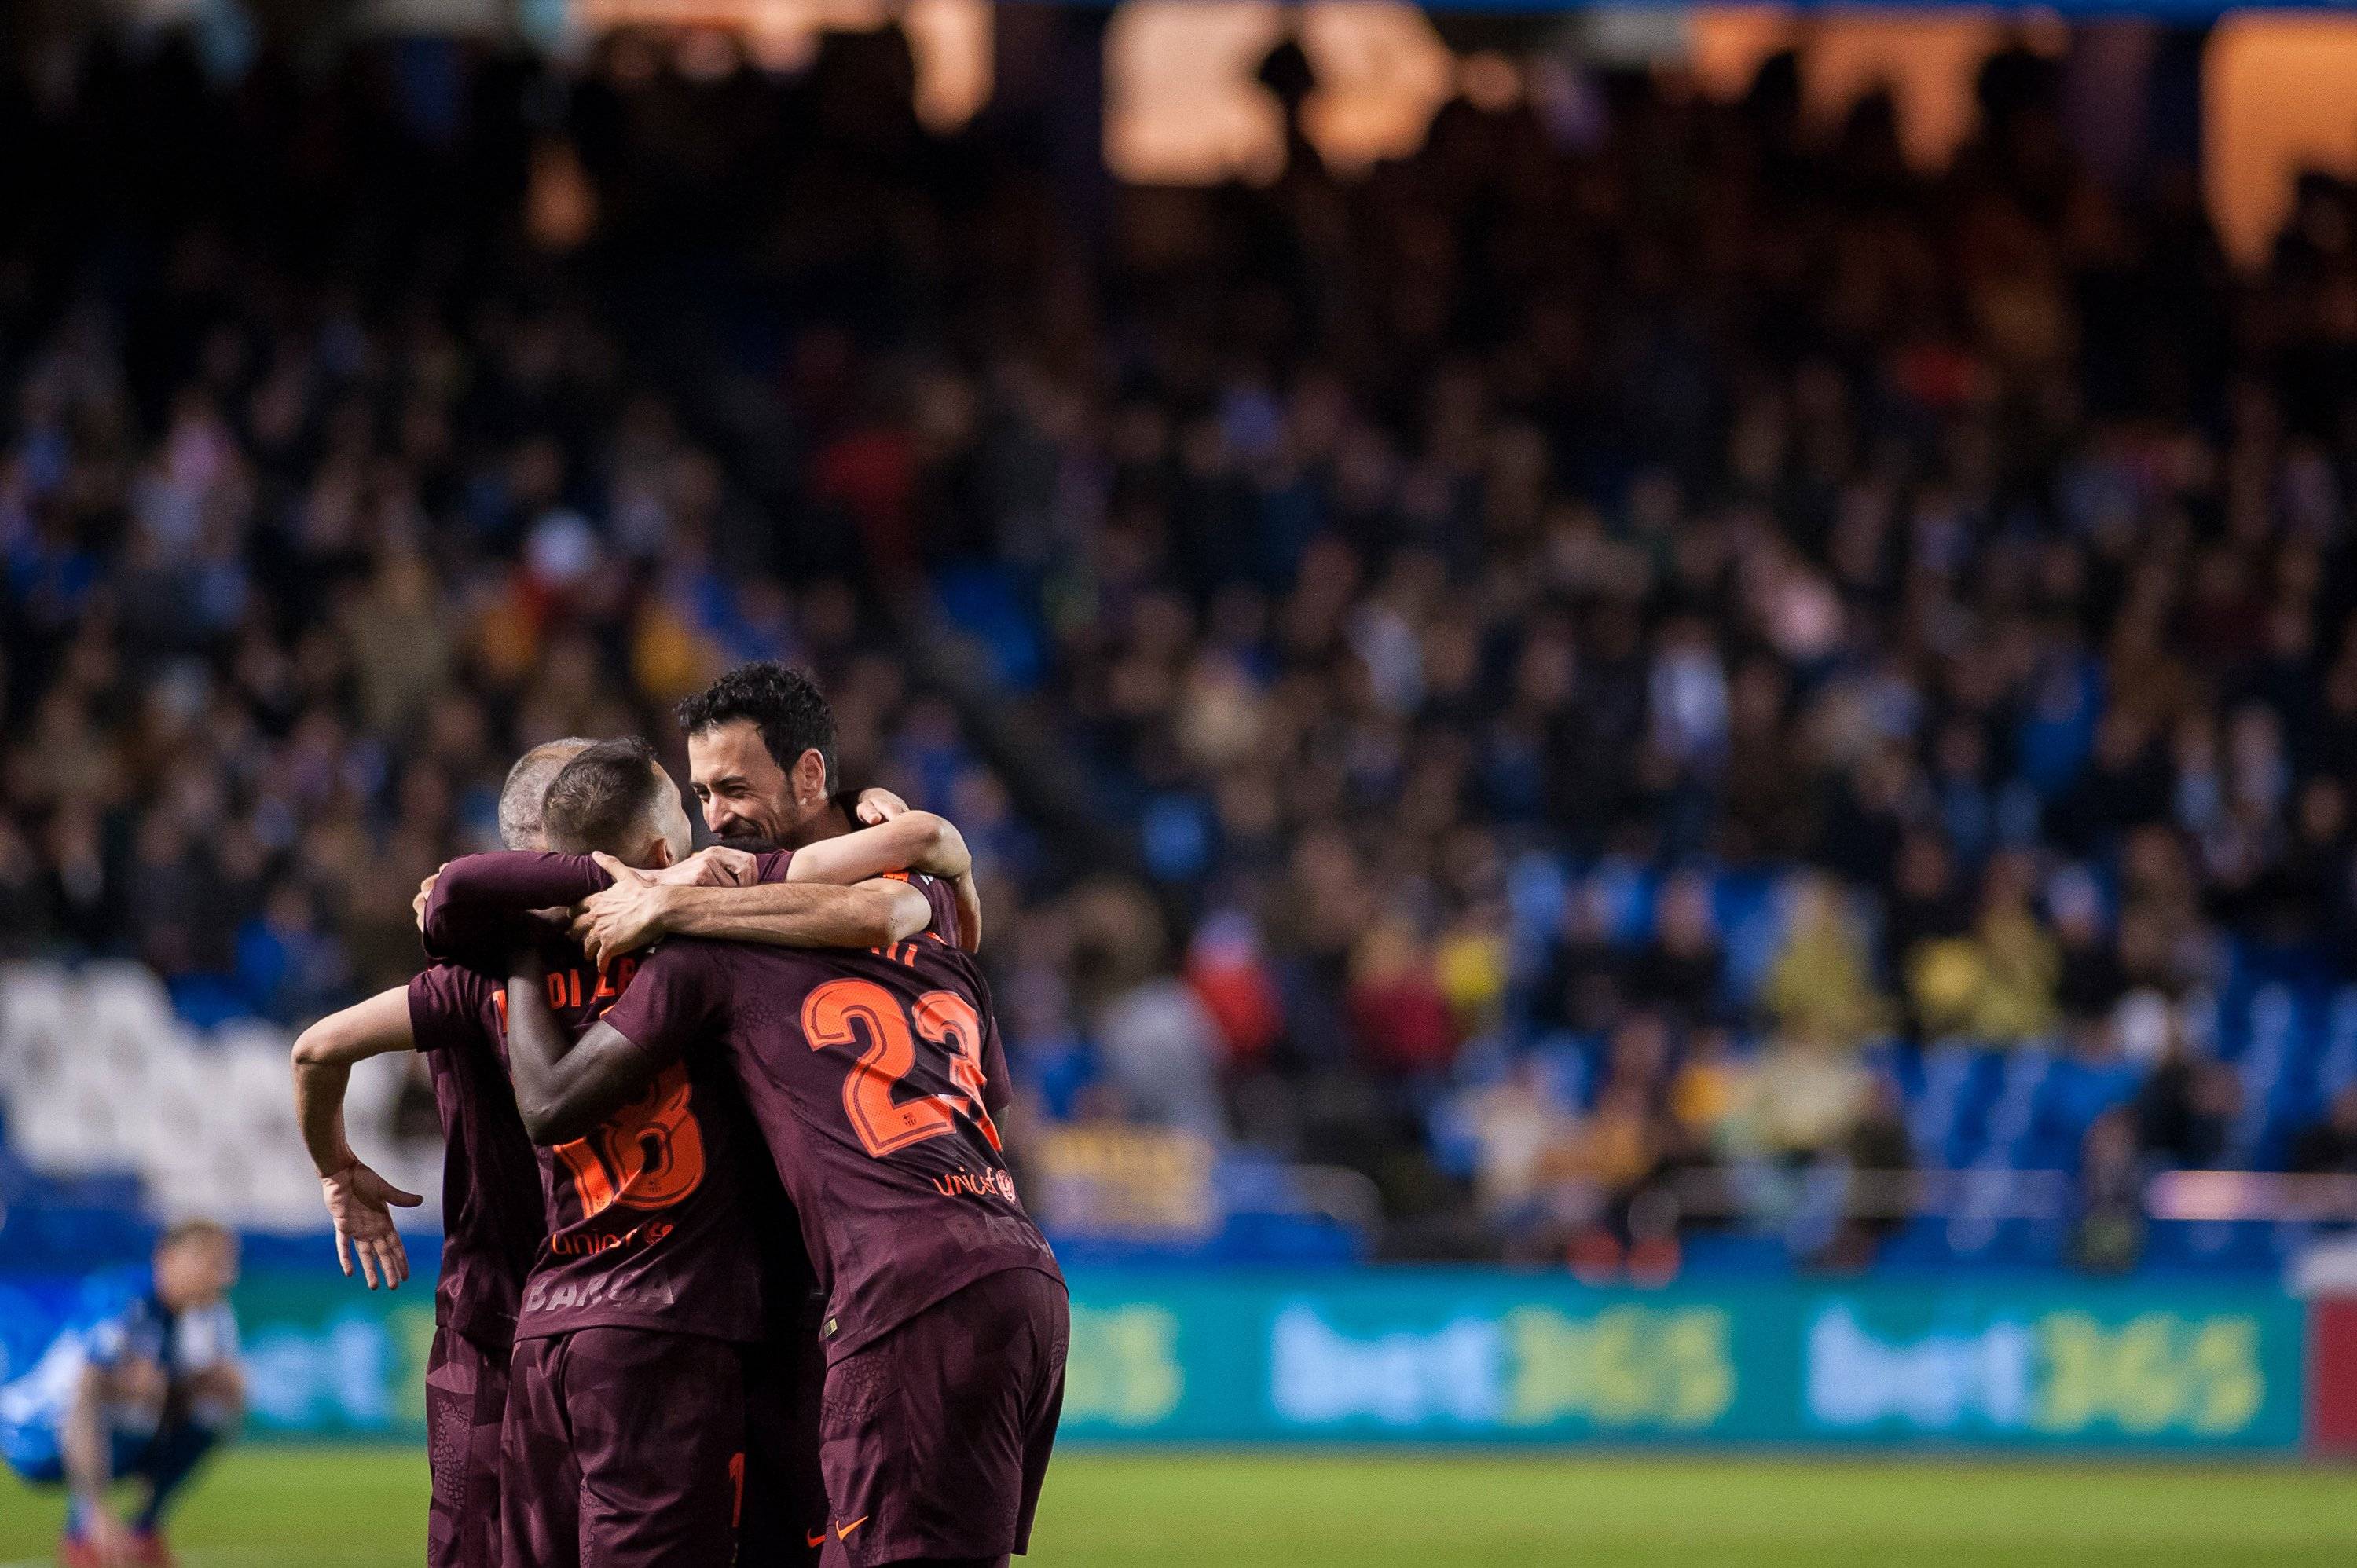 El Barça campeón arrasa y hace que TV3 quede última